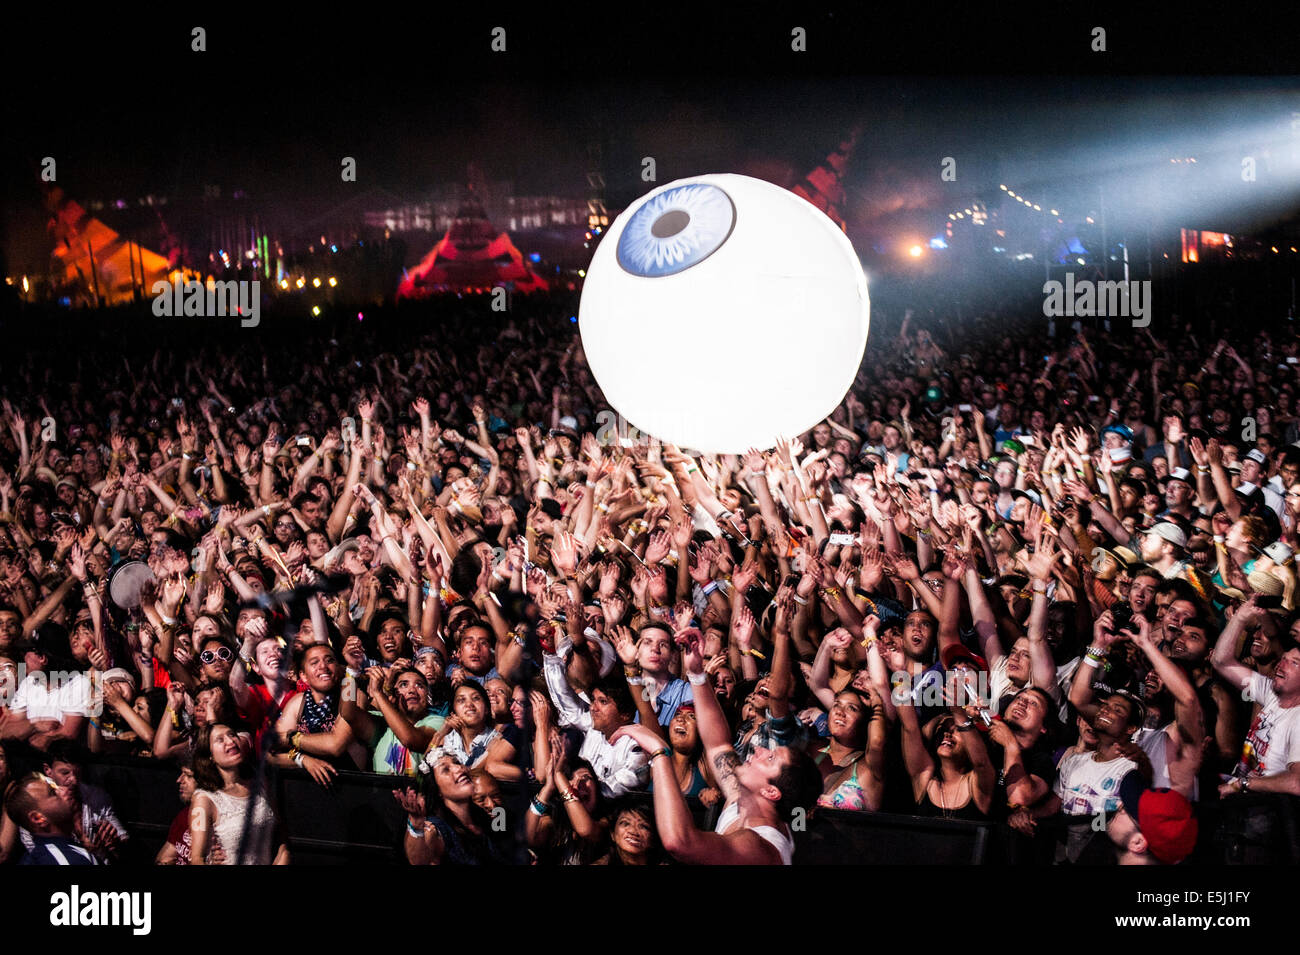 Gli appassionati di musica di rimbalzo di una palla spiaggia tipo di Blow up eyeball palla attraverso una folla enorme a Coachella Music Festival Foto Stock